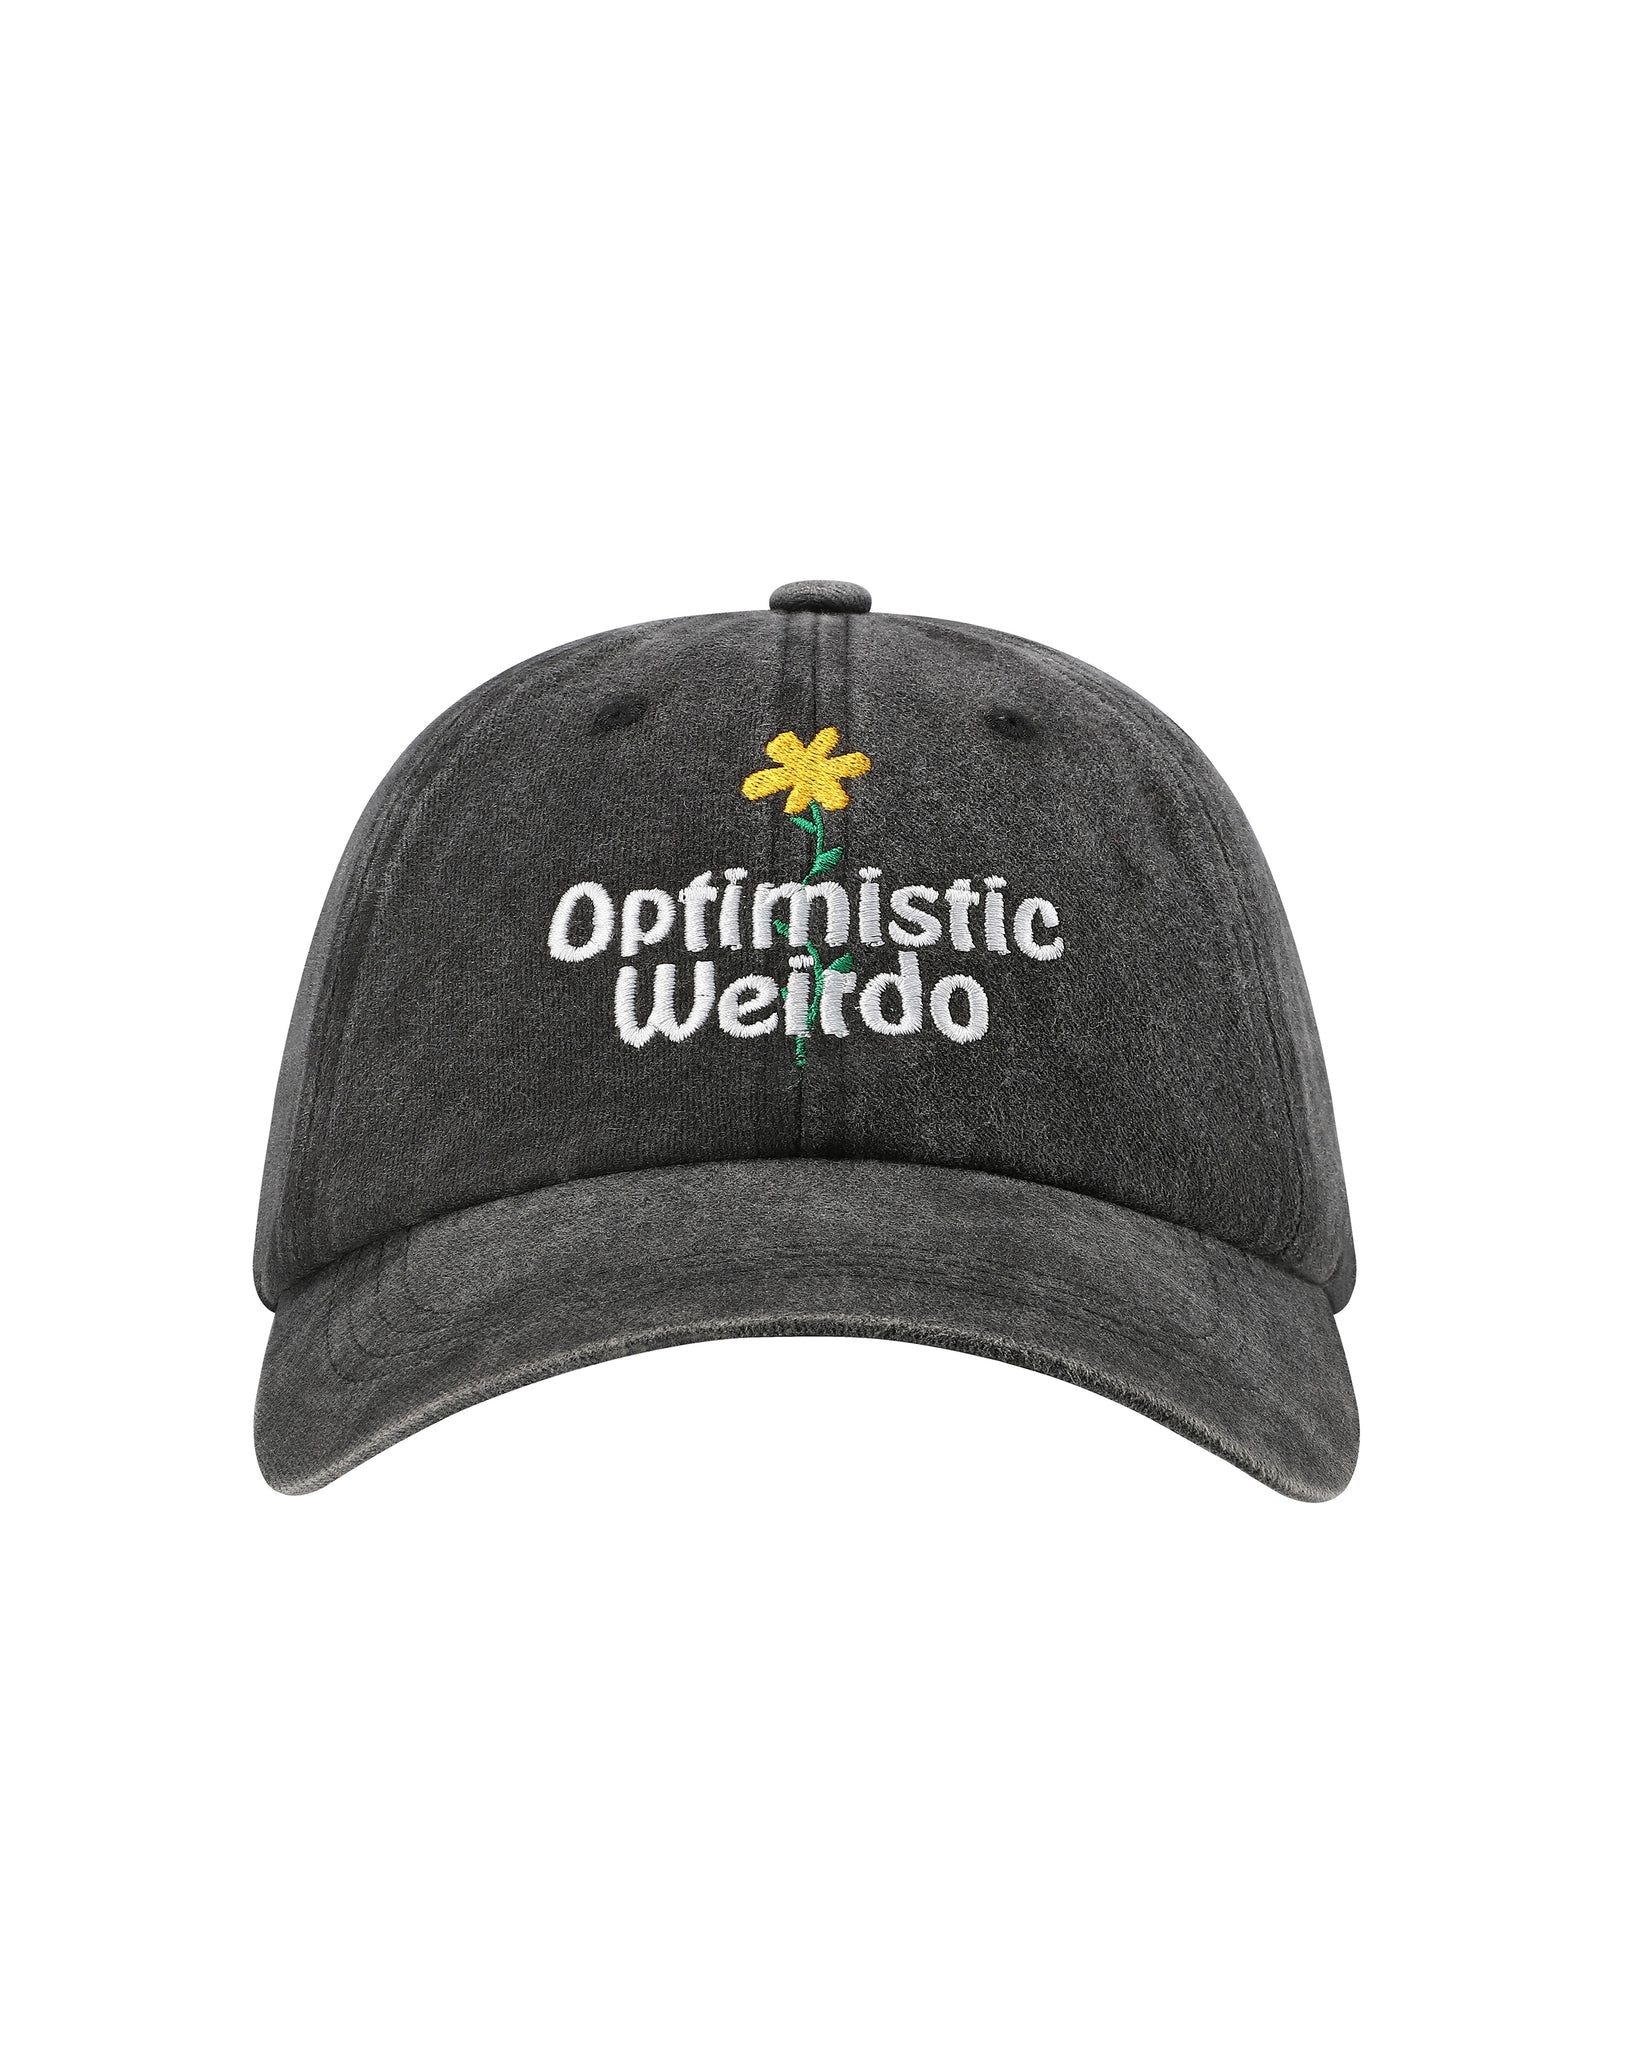 Optimistic Weirdo Cap / Charcoal